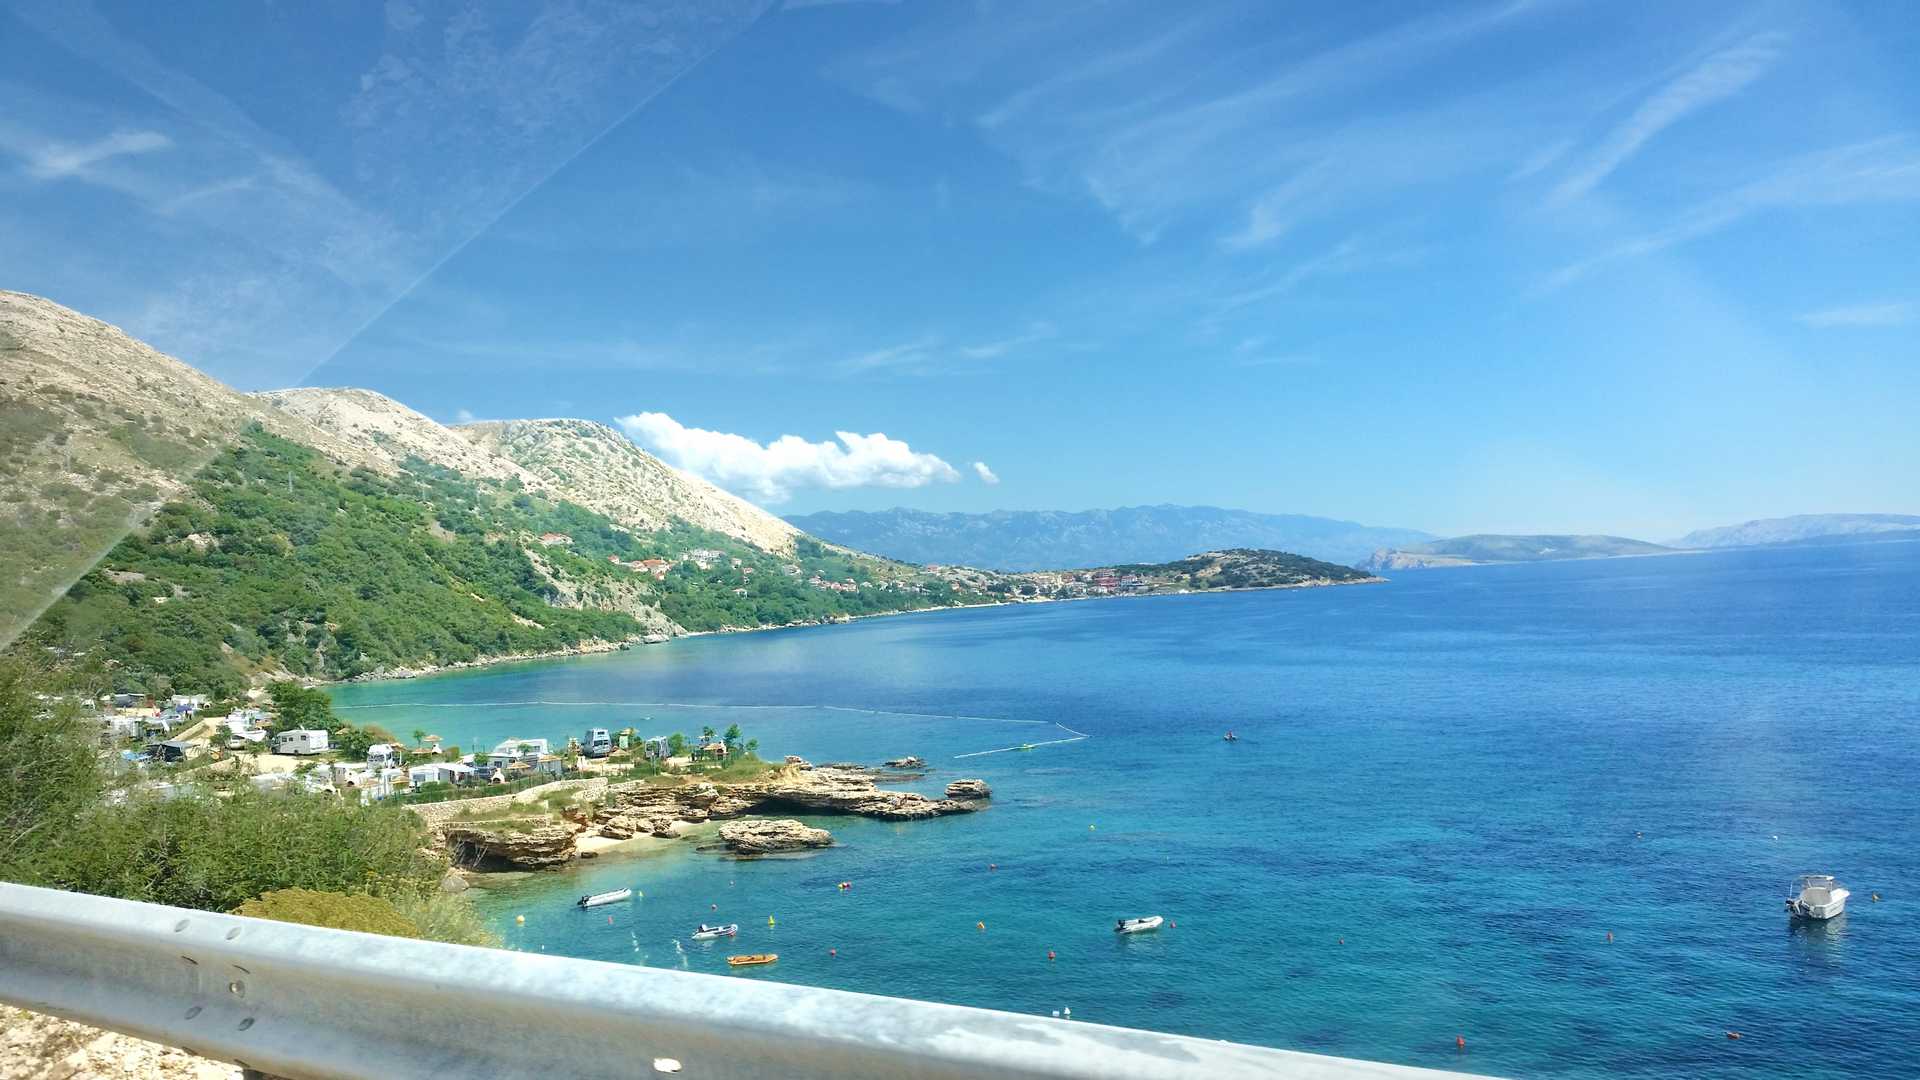 Chorwacja widok z drogi na morze